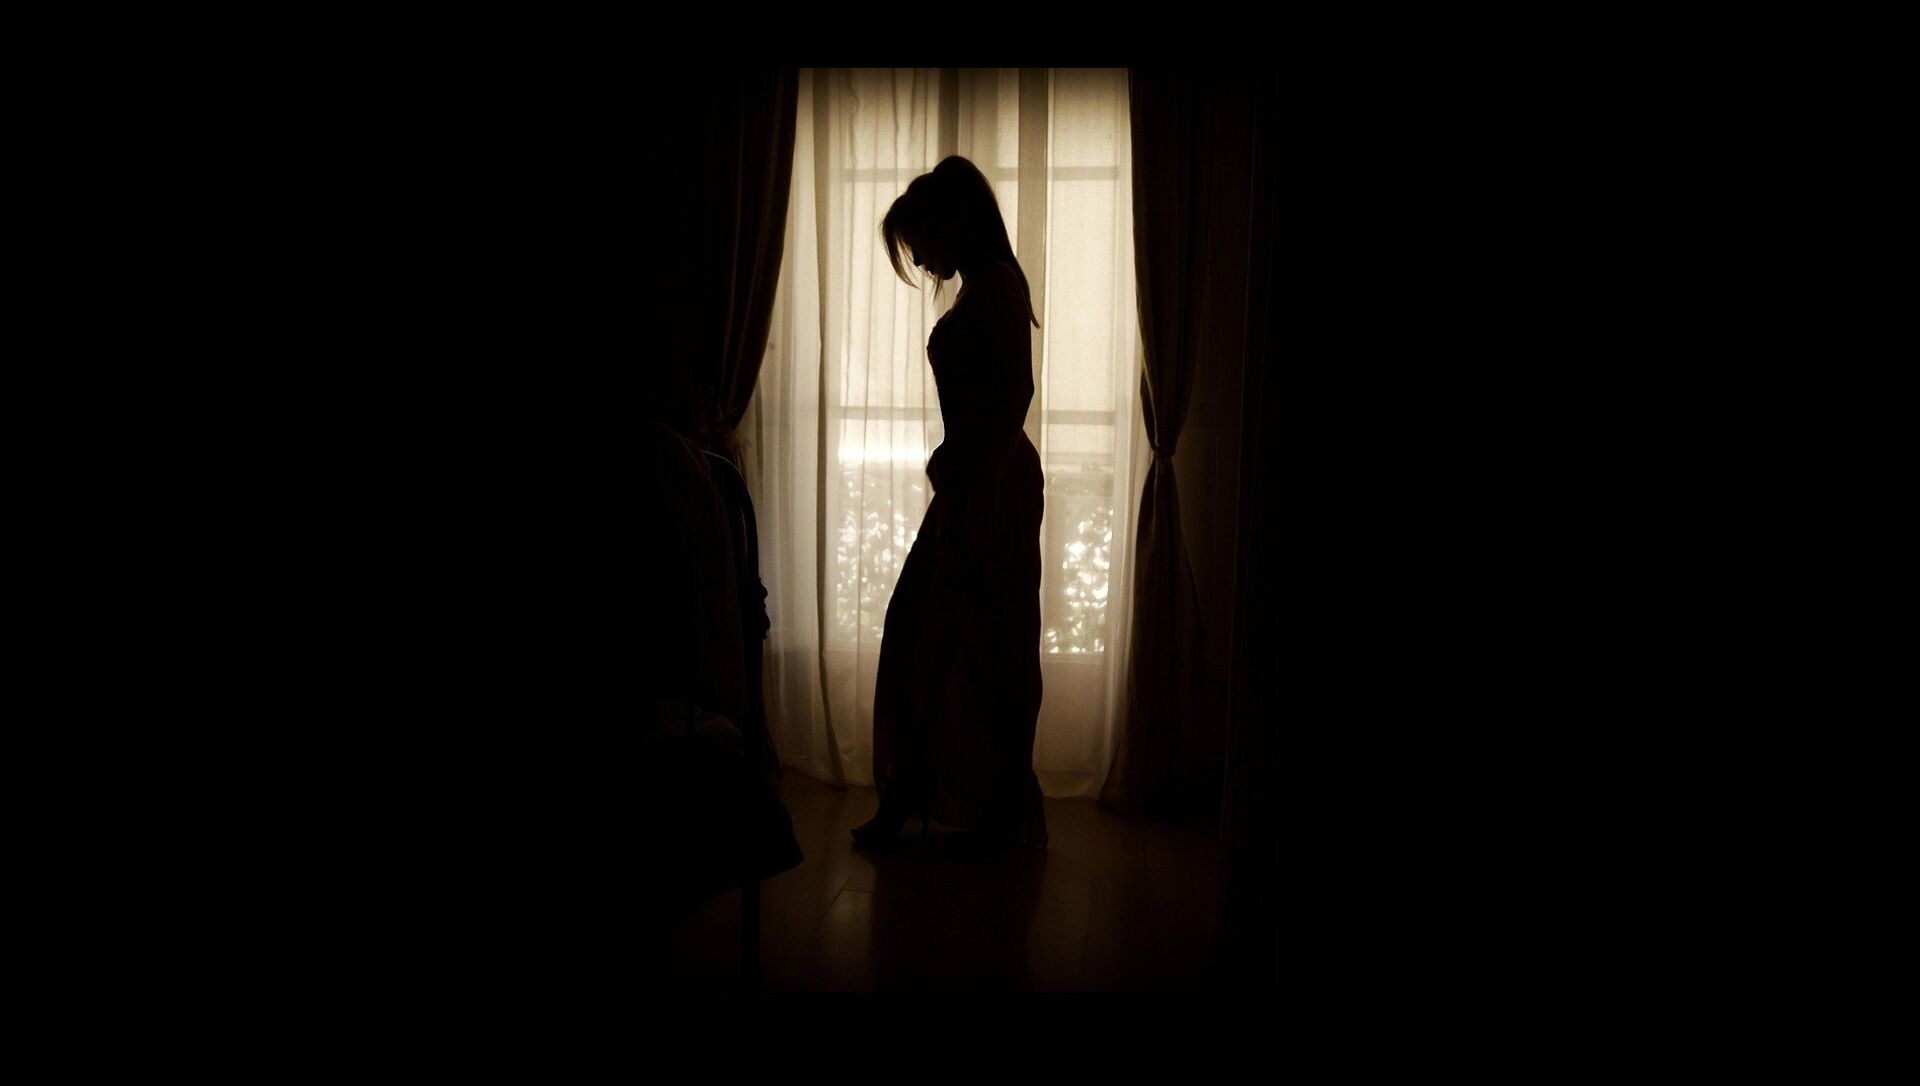 Силуэт девушки на фоне окна, иллюстративное фото - Sputnik Қазақстан, 1920, 04.05.2021